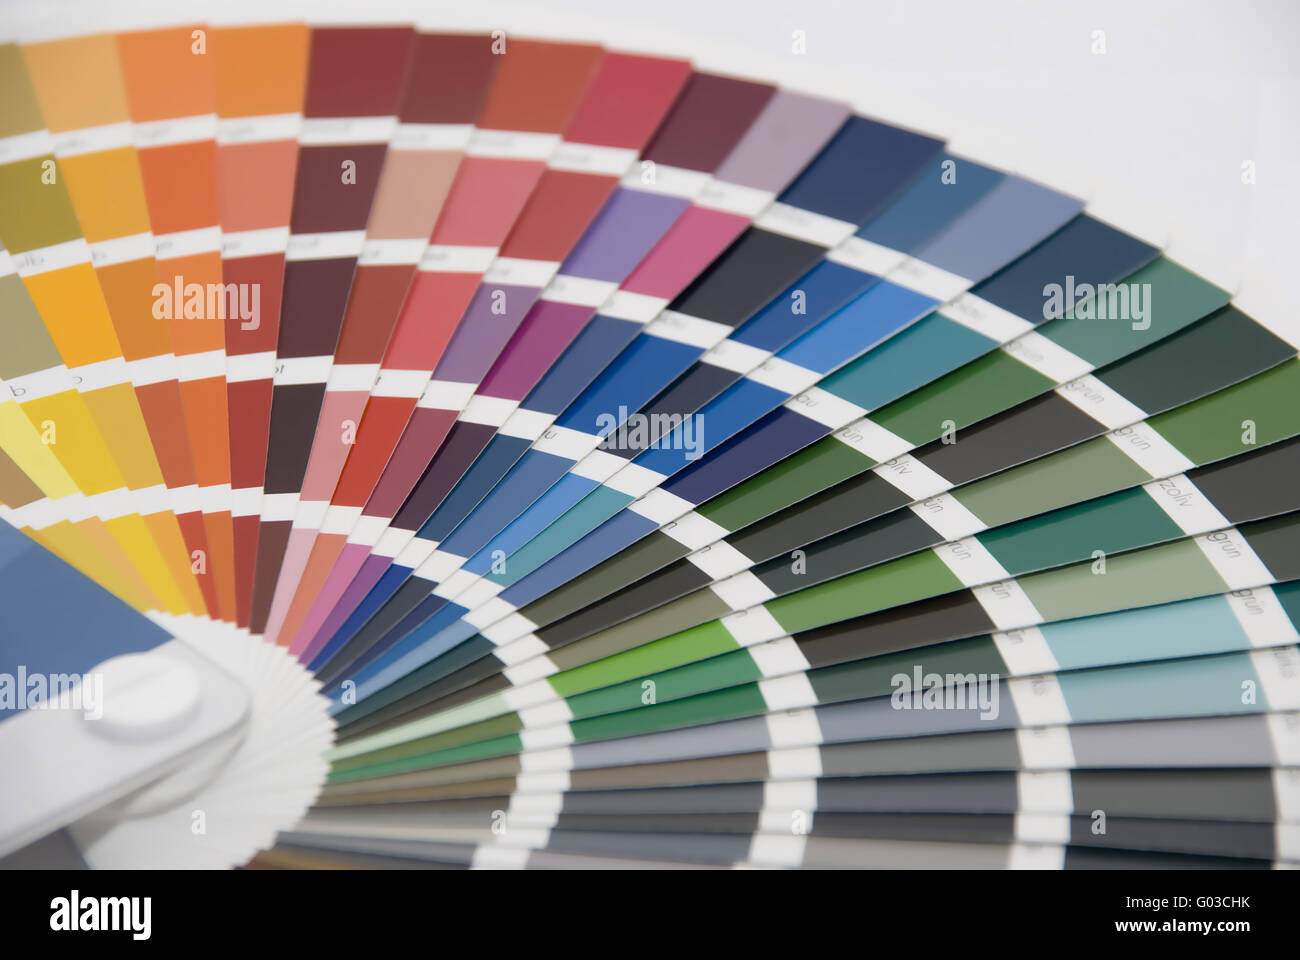 Carta de colores ral fotografías e imágenes de alta resolución - Alamy